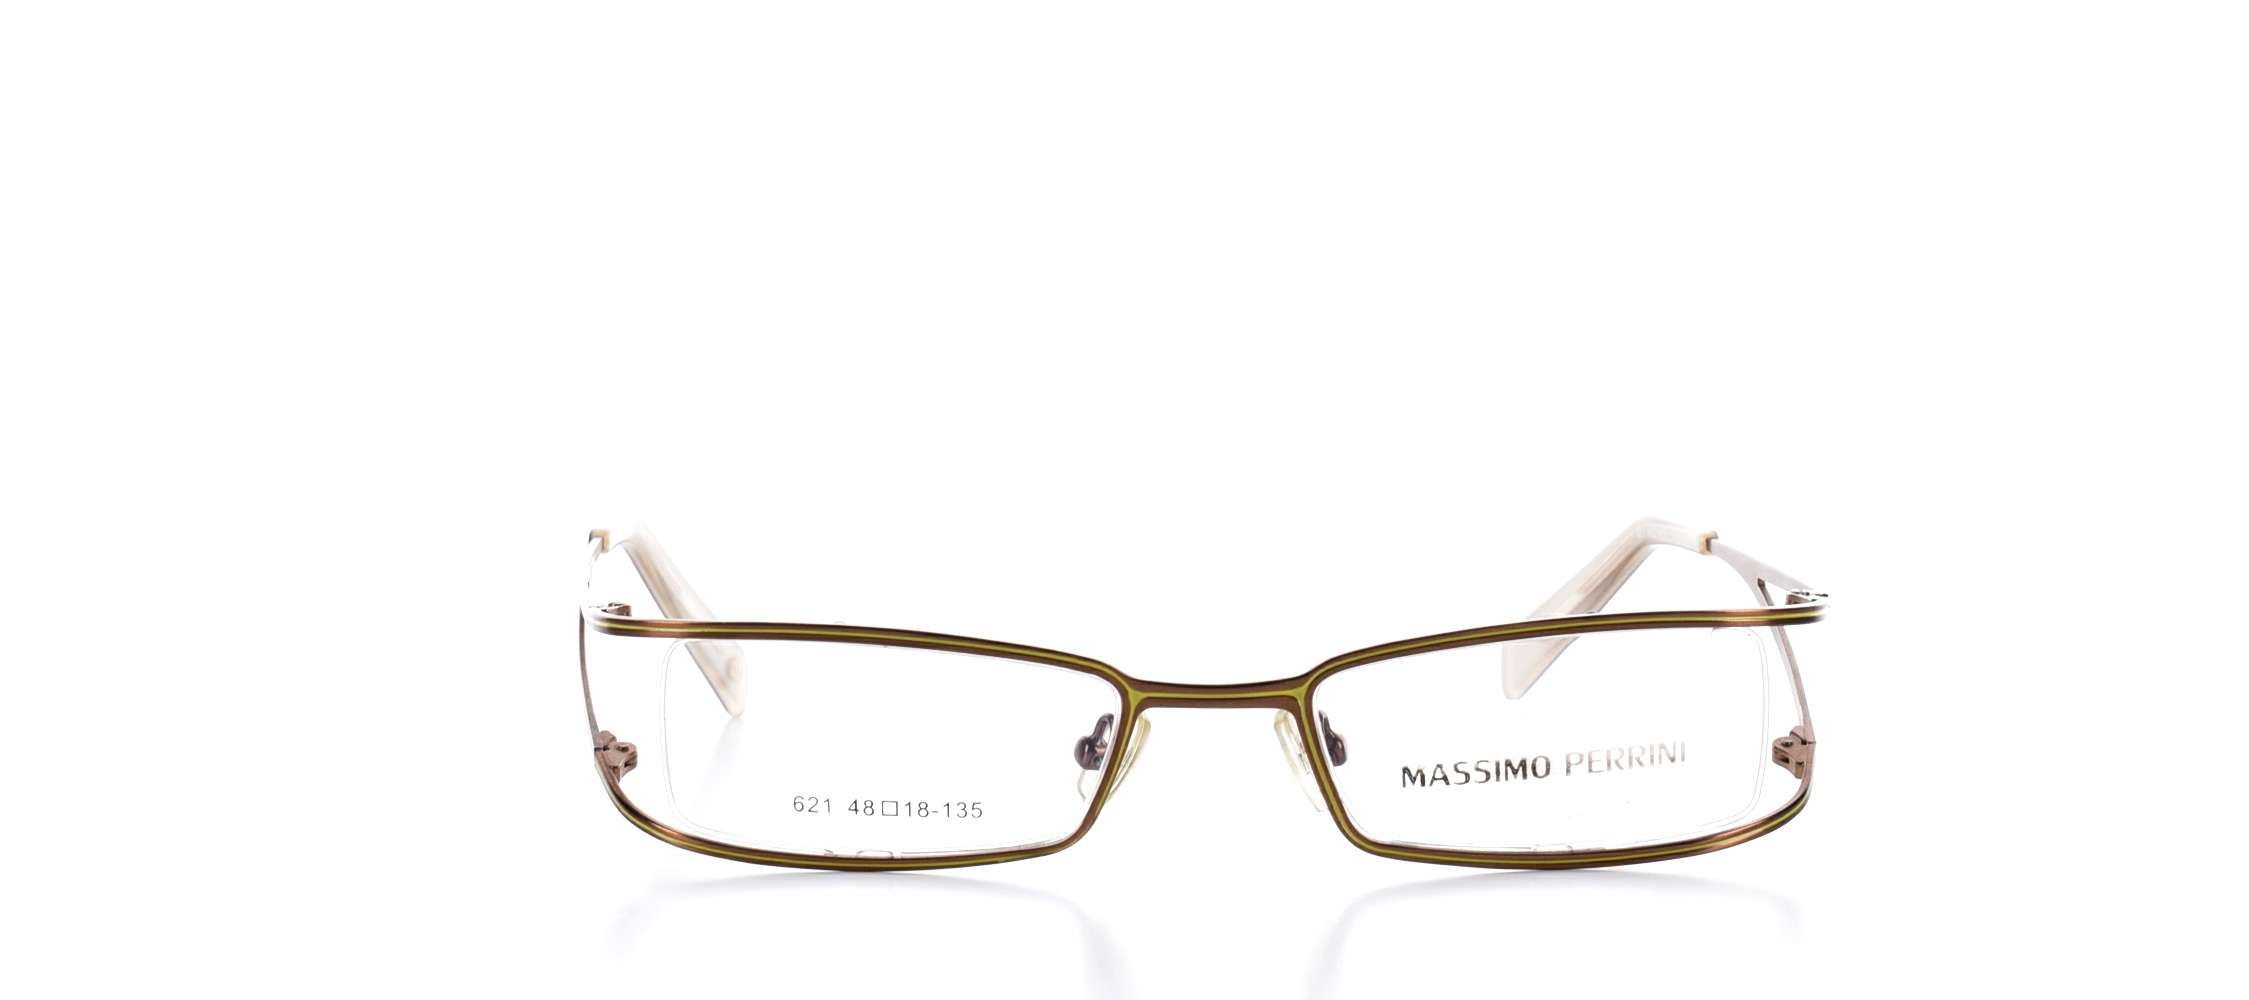 Rama ochelari vedere Massimo Perrini